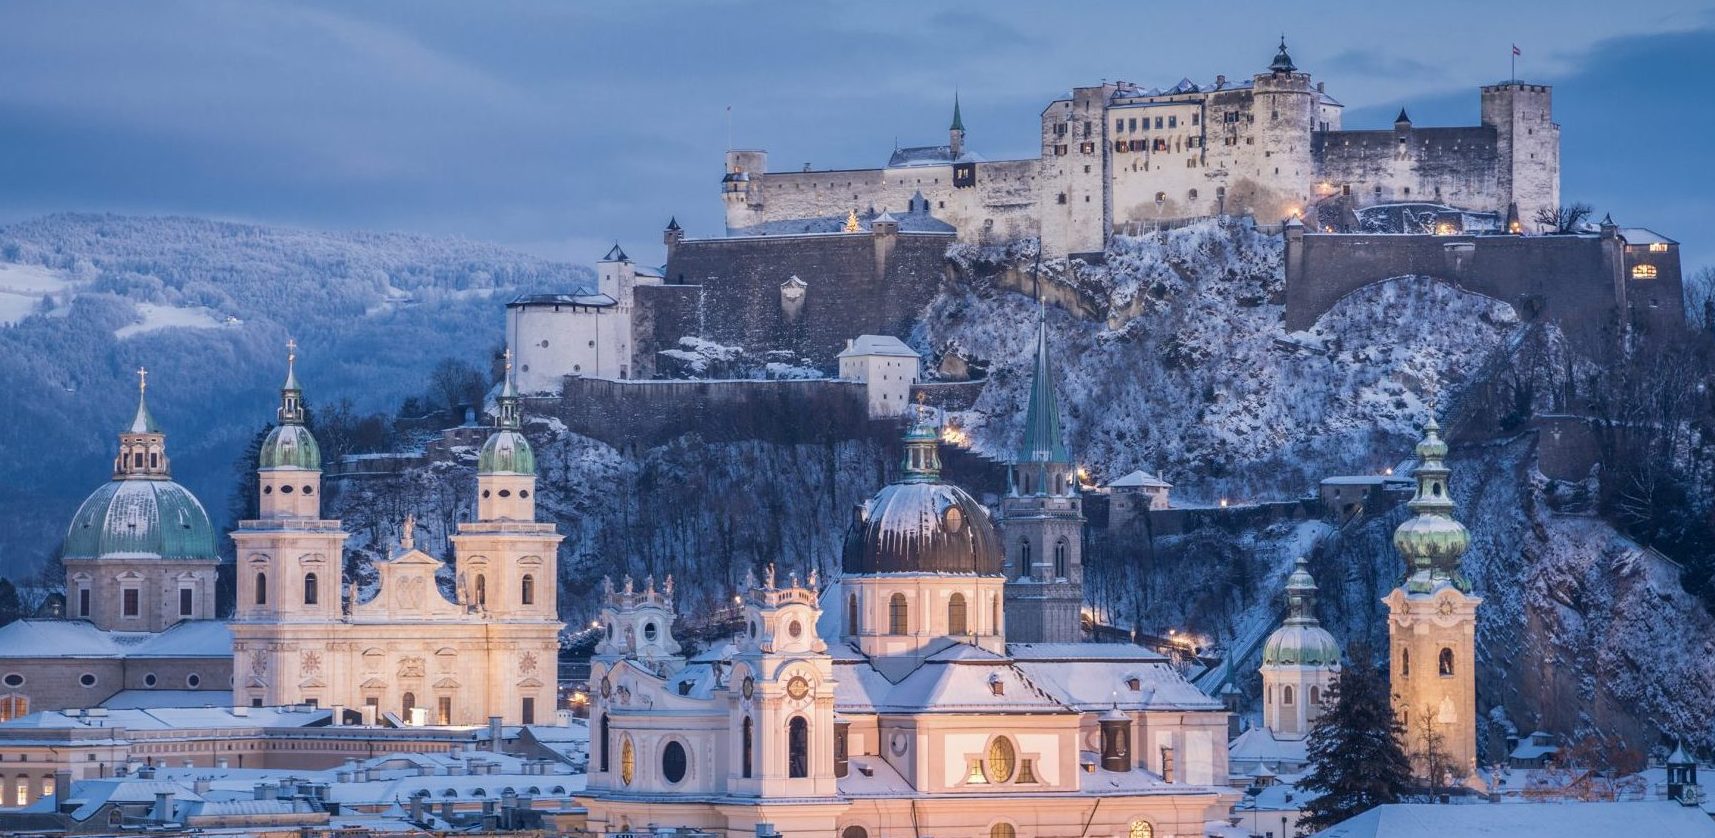 A real winter wonderland - Salzburg, Austria, in winter